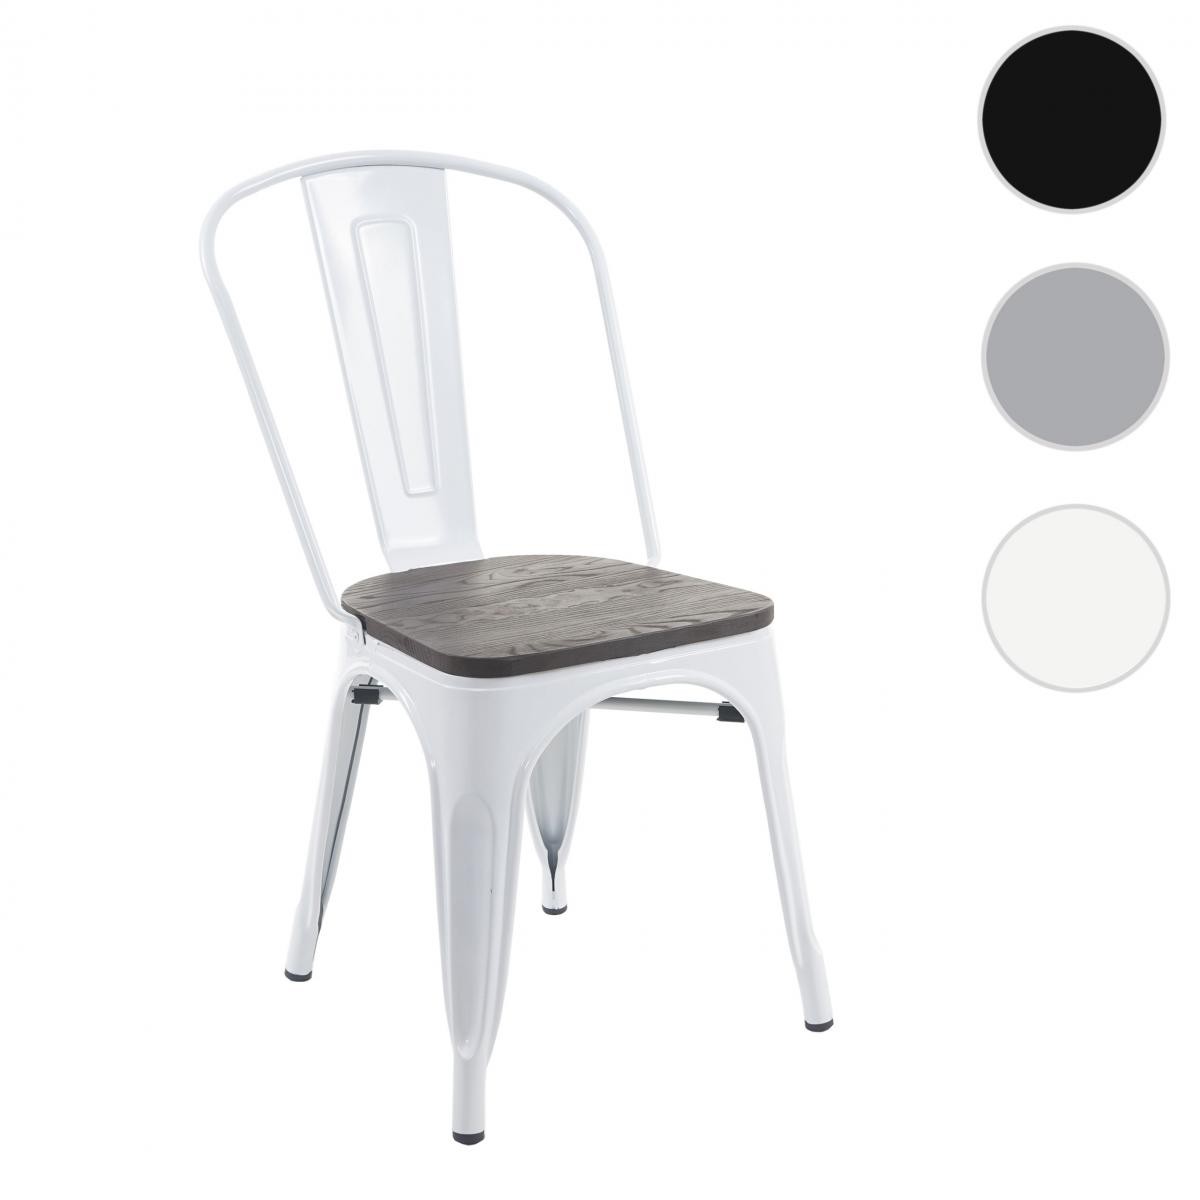 Mendler - Chaise HWC-A73, avec siège en bois, chaise de bistro, métal, empilable, style industriel ~ blanc - Chaises